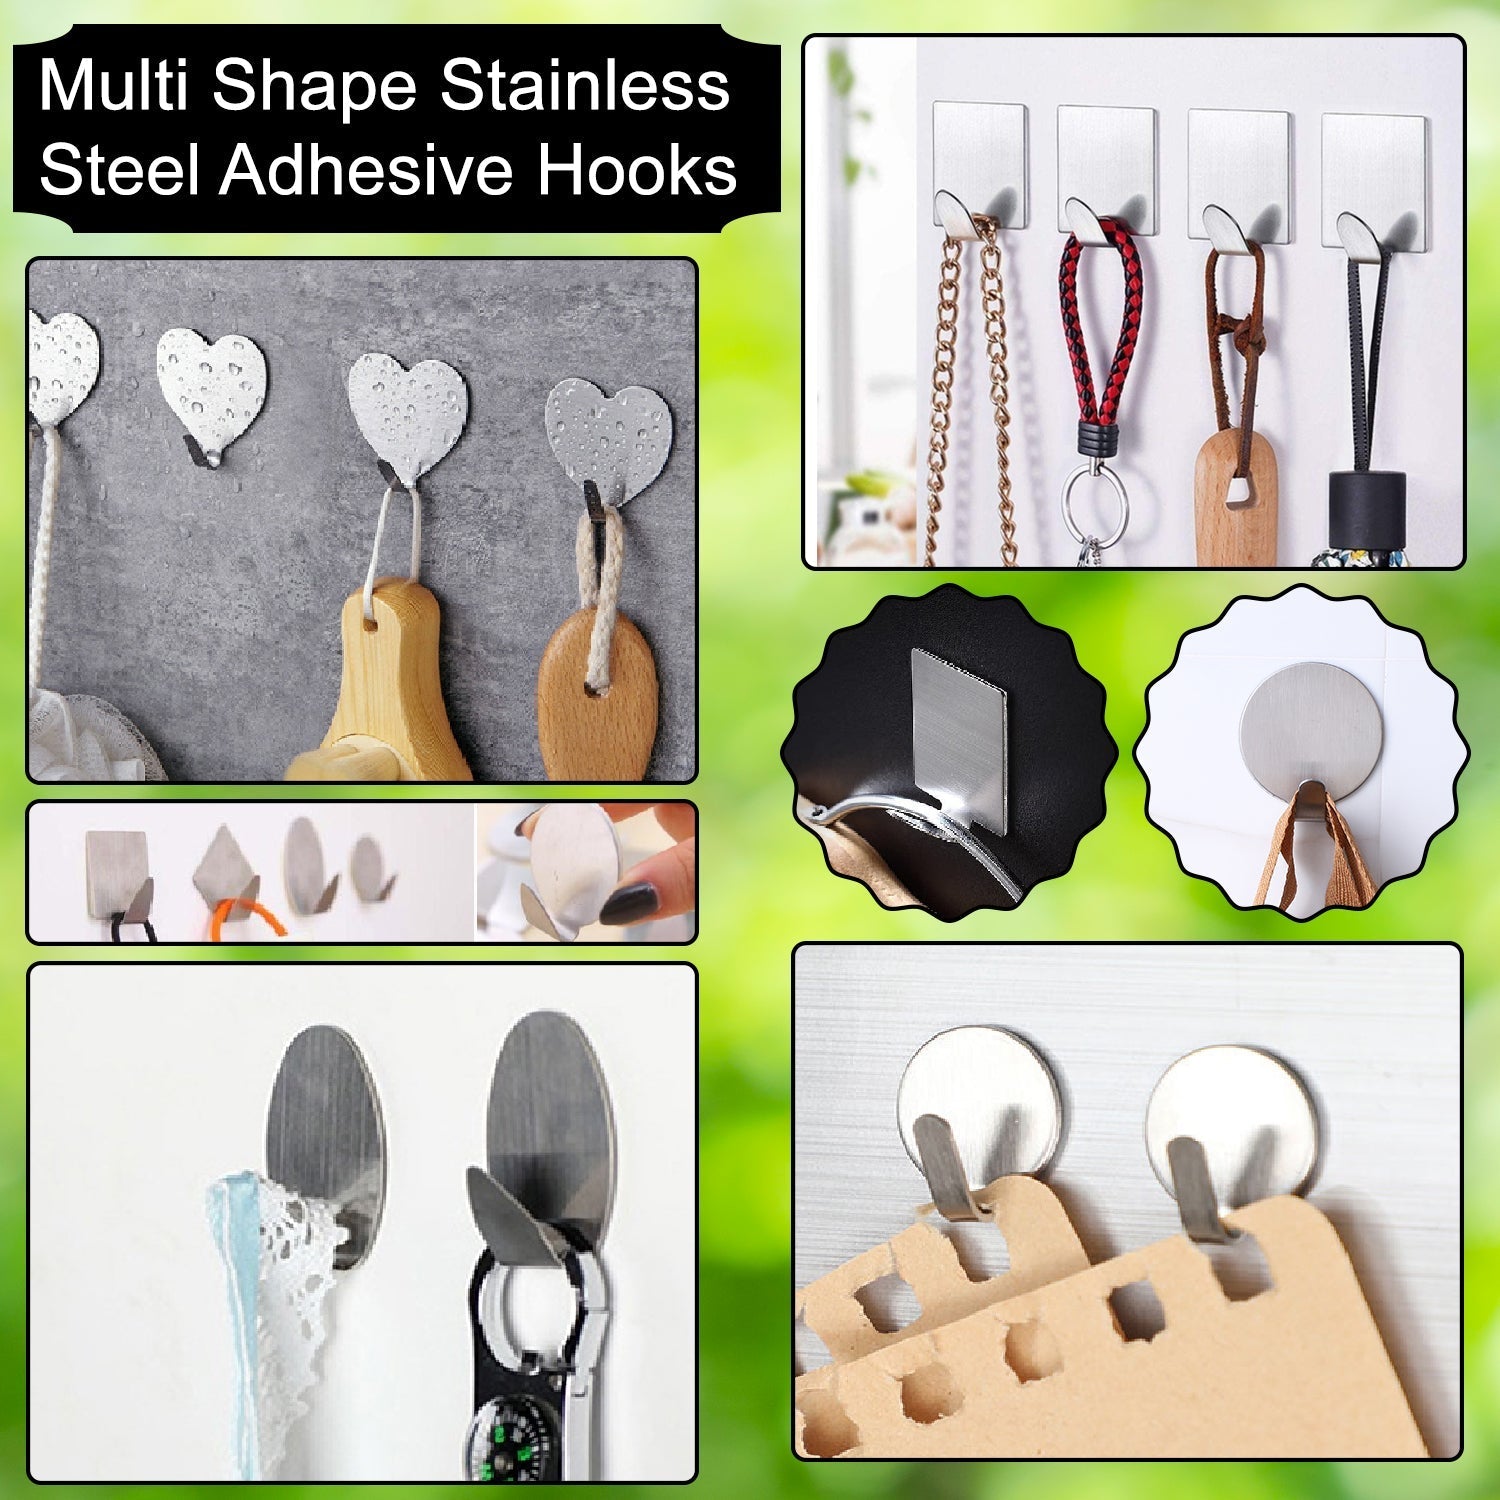 Multipurpose Stainless Steel Adhesive Hooks